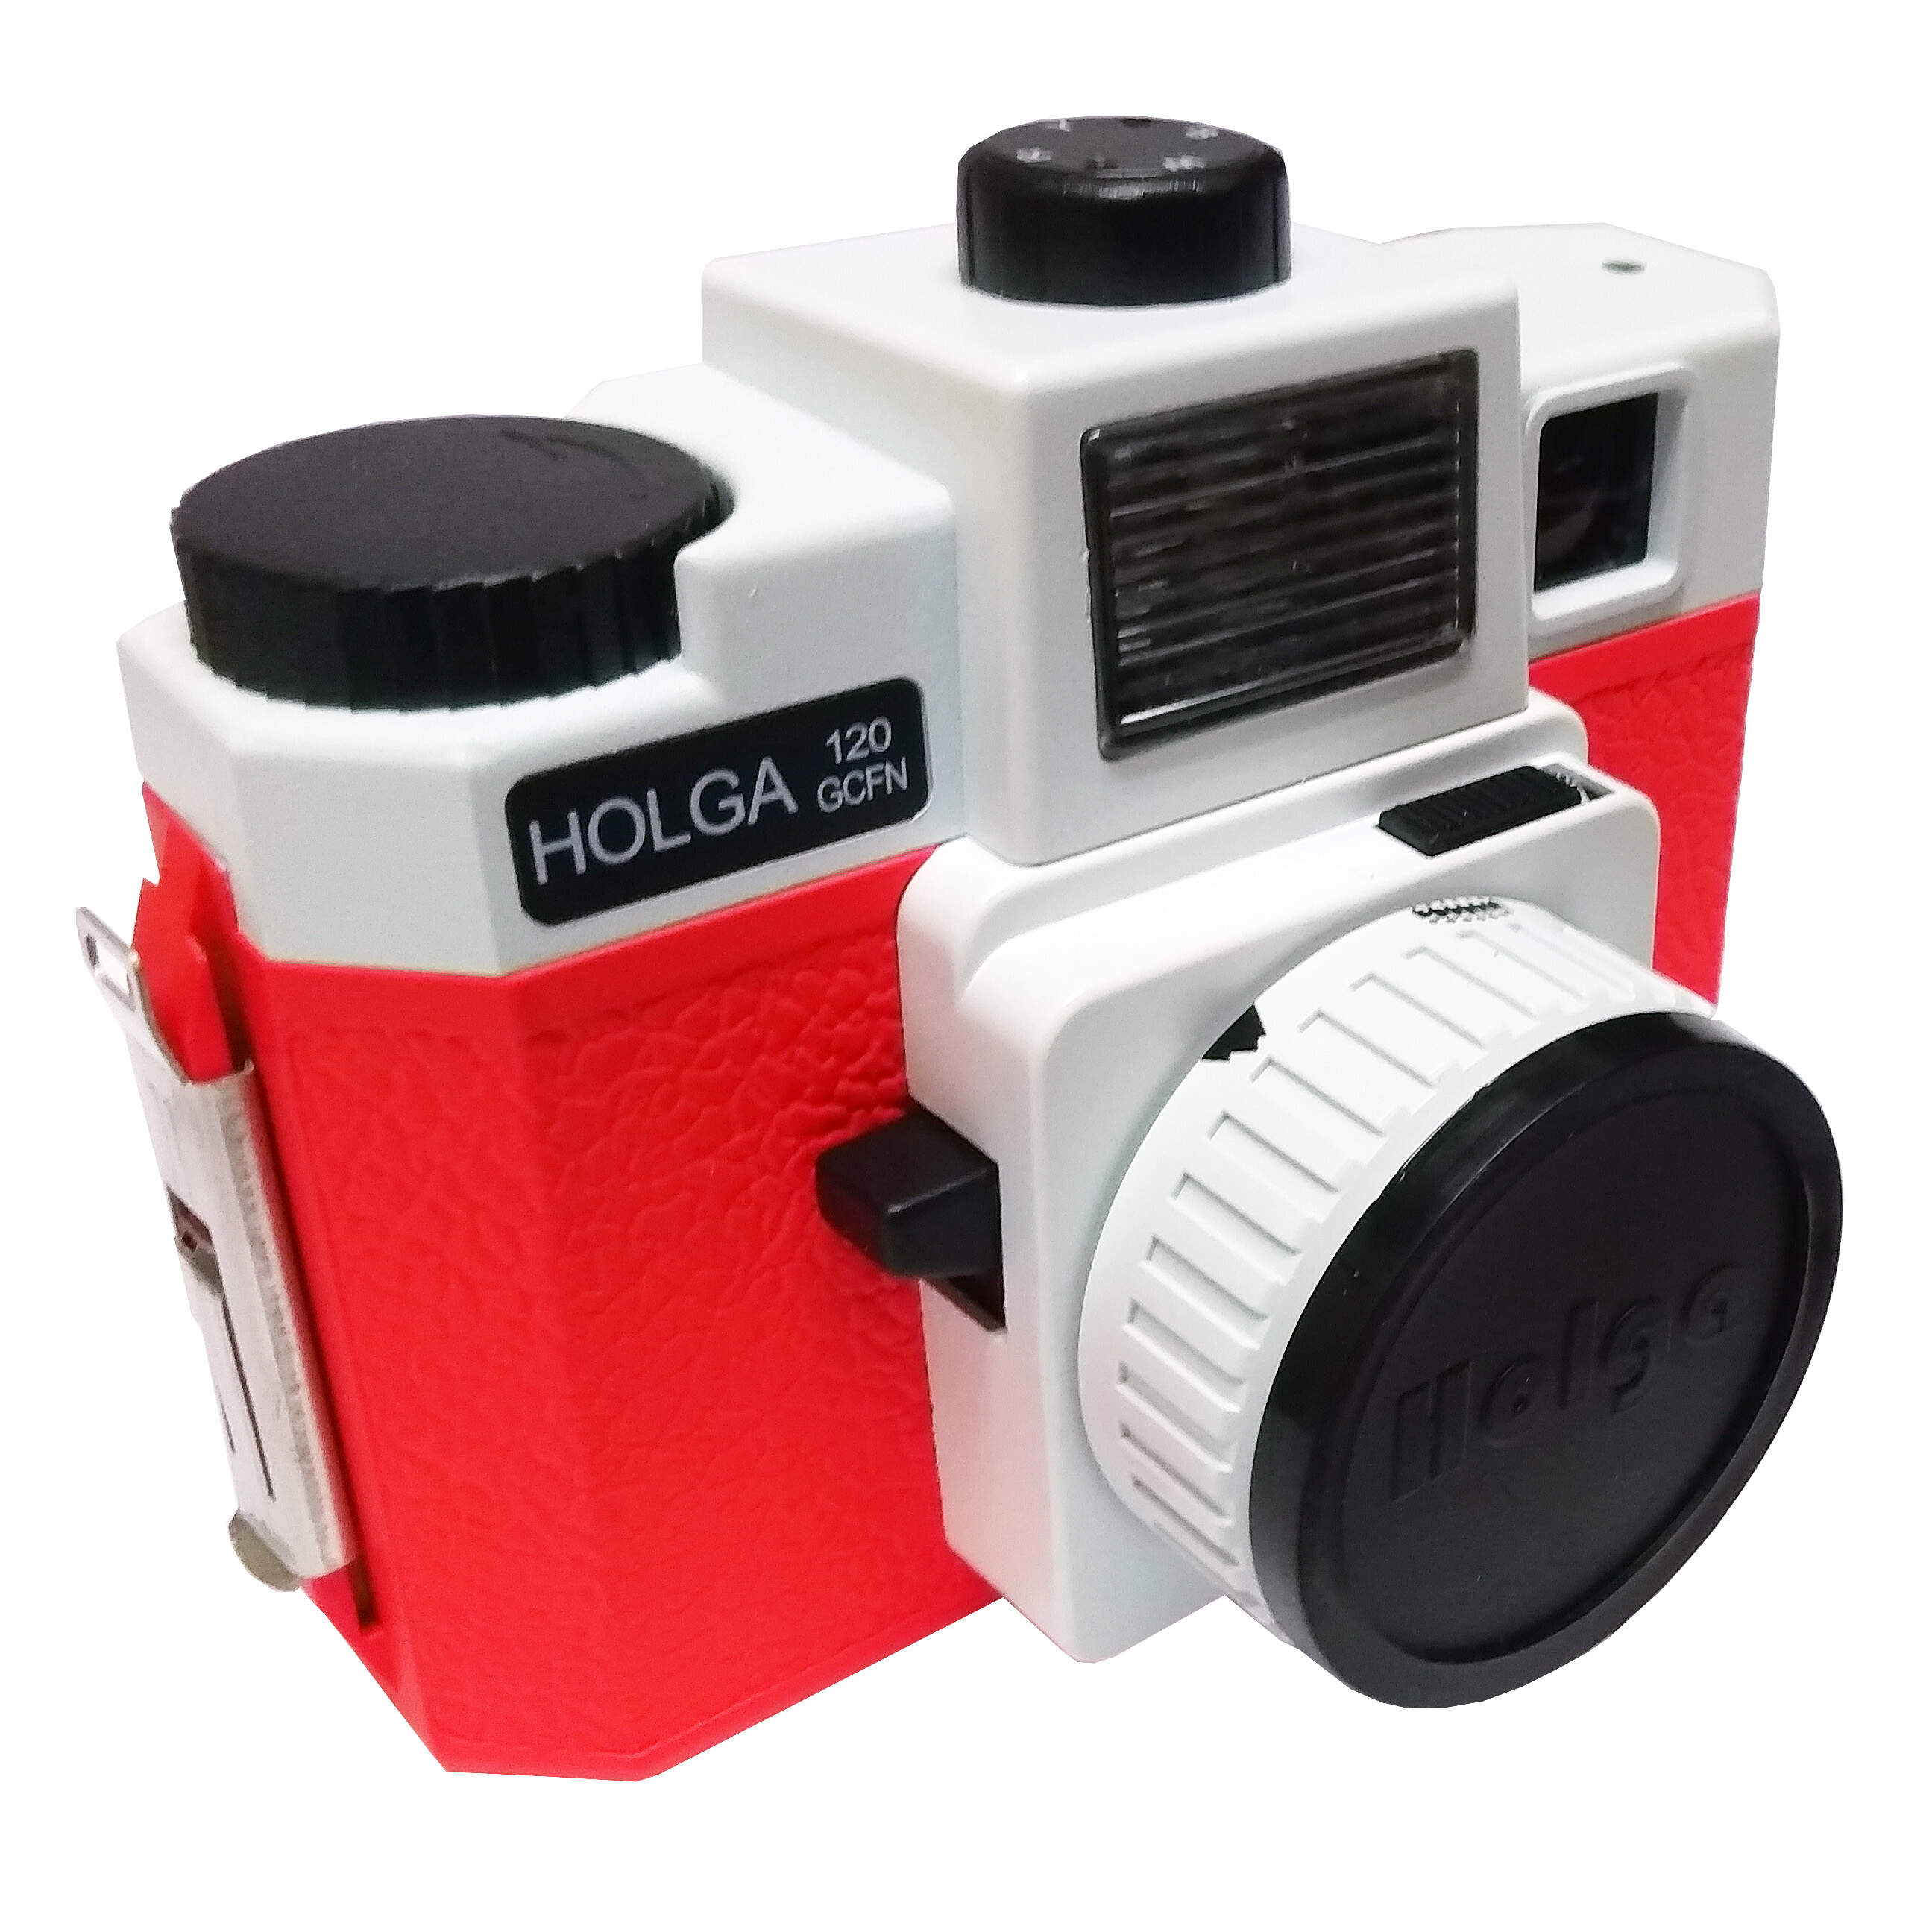 HOLGA 120GCFN White & Red Film Camera